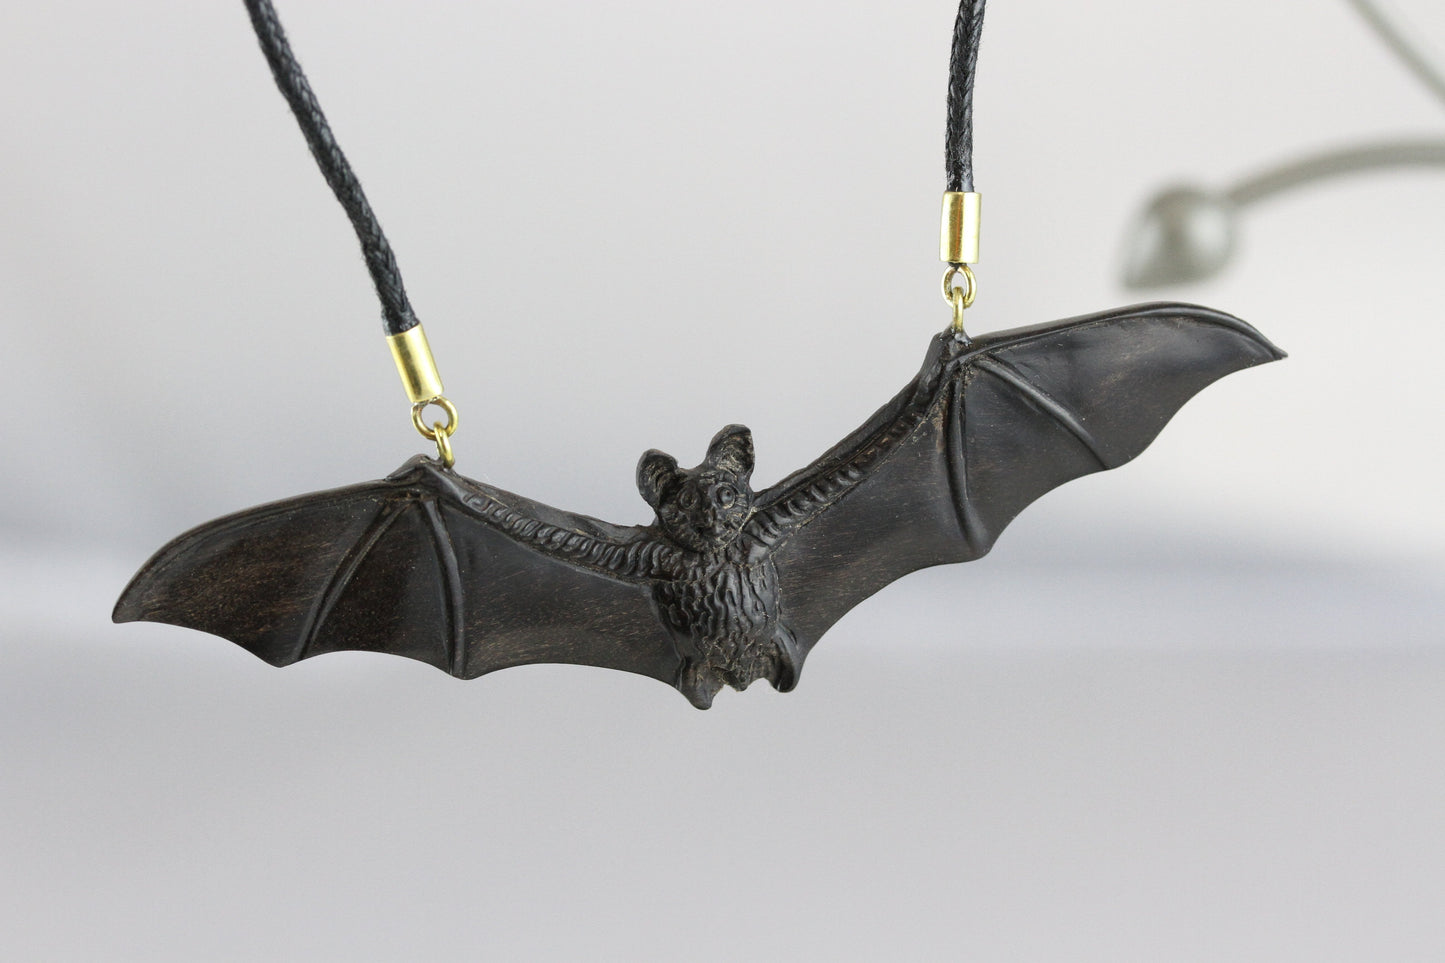 Flying Bat Necklace - Carved Wood Necklace - U060